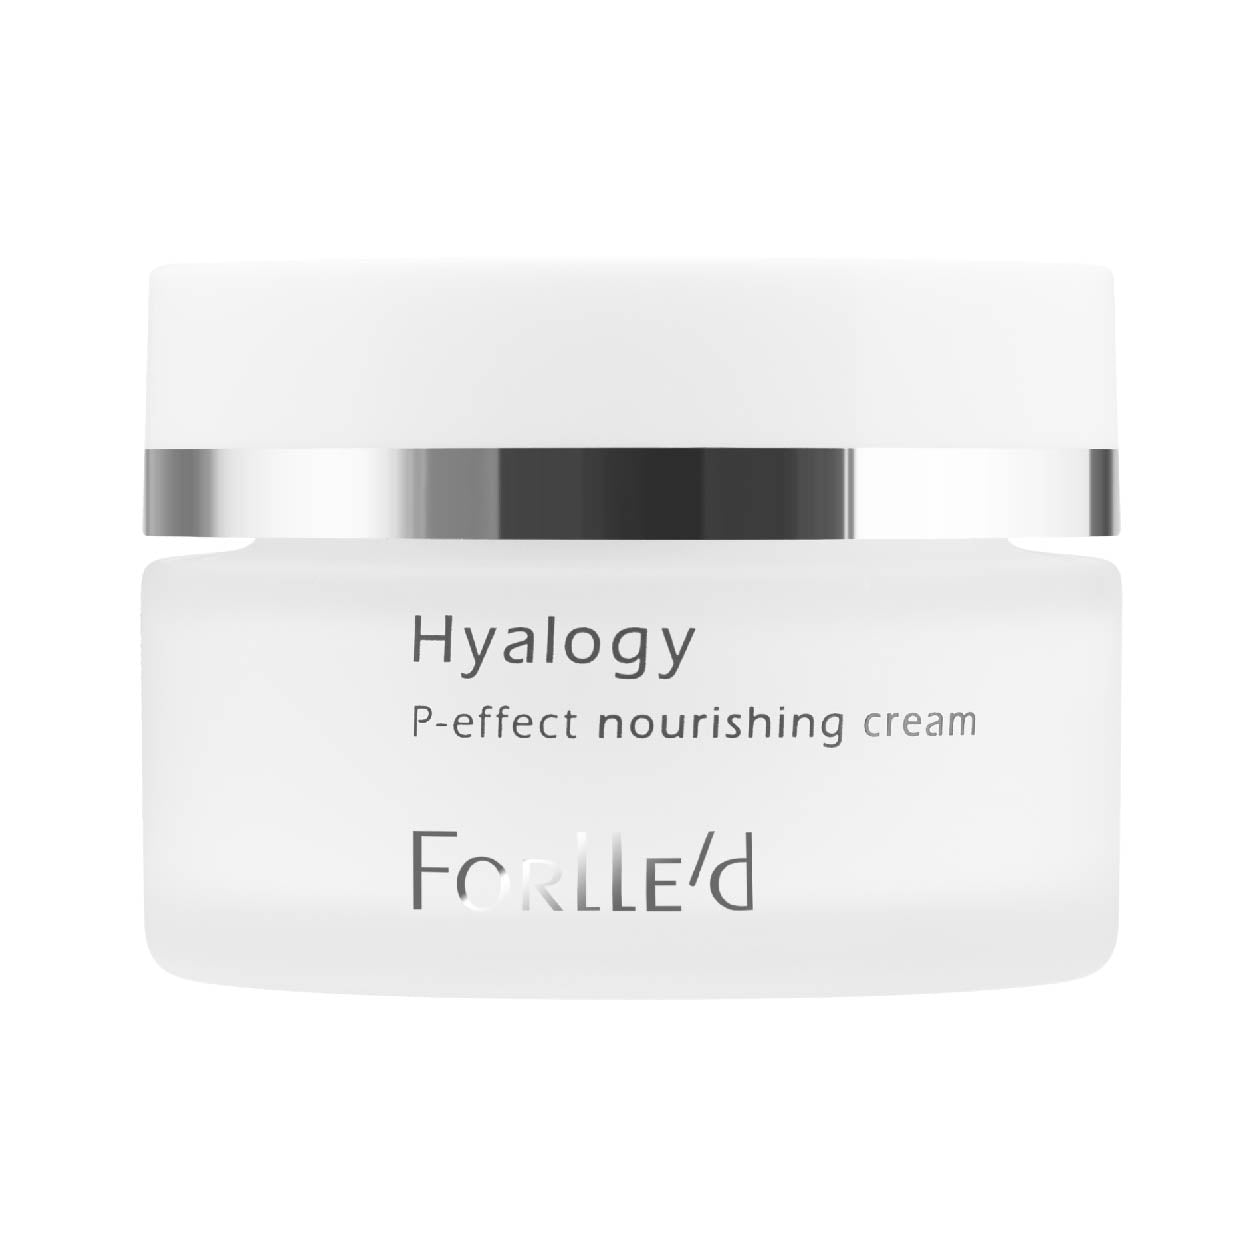 Forlle'd - Hyalogy P-effect Nourishing Cream